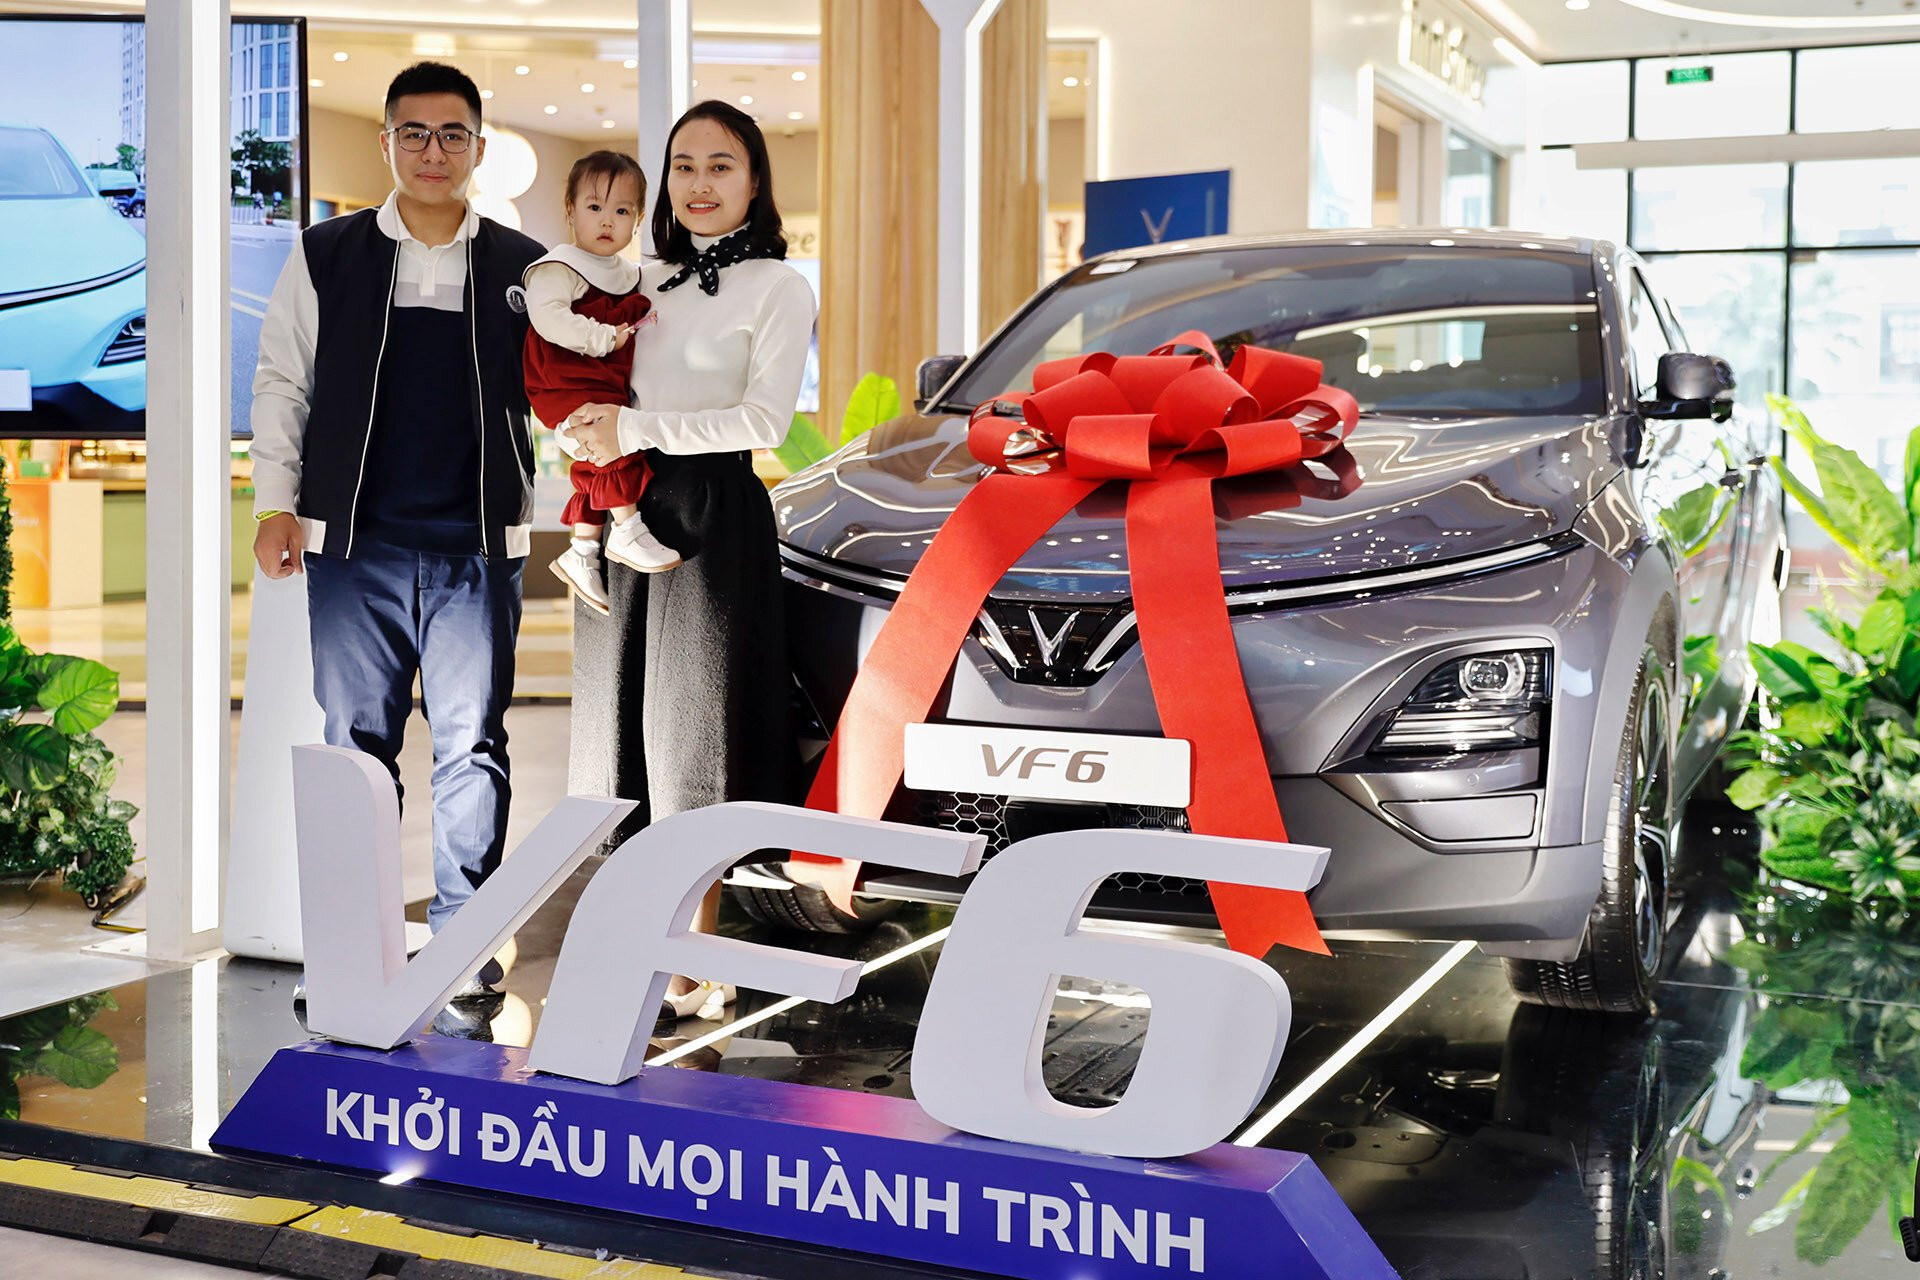 Gia đình anh Nguyễn Anh Tú là một trong những khách hàng đầu tiên nhận xe VF 6 tại Hà Nội.